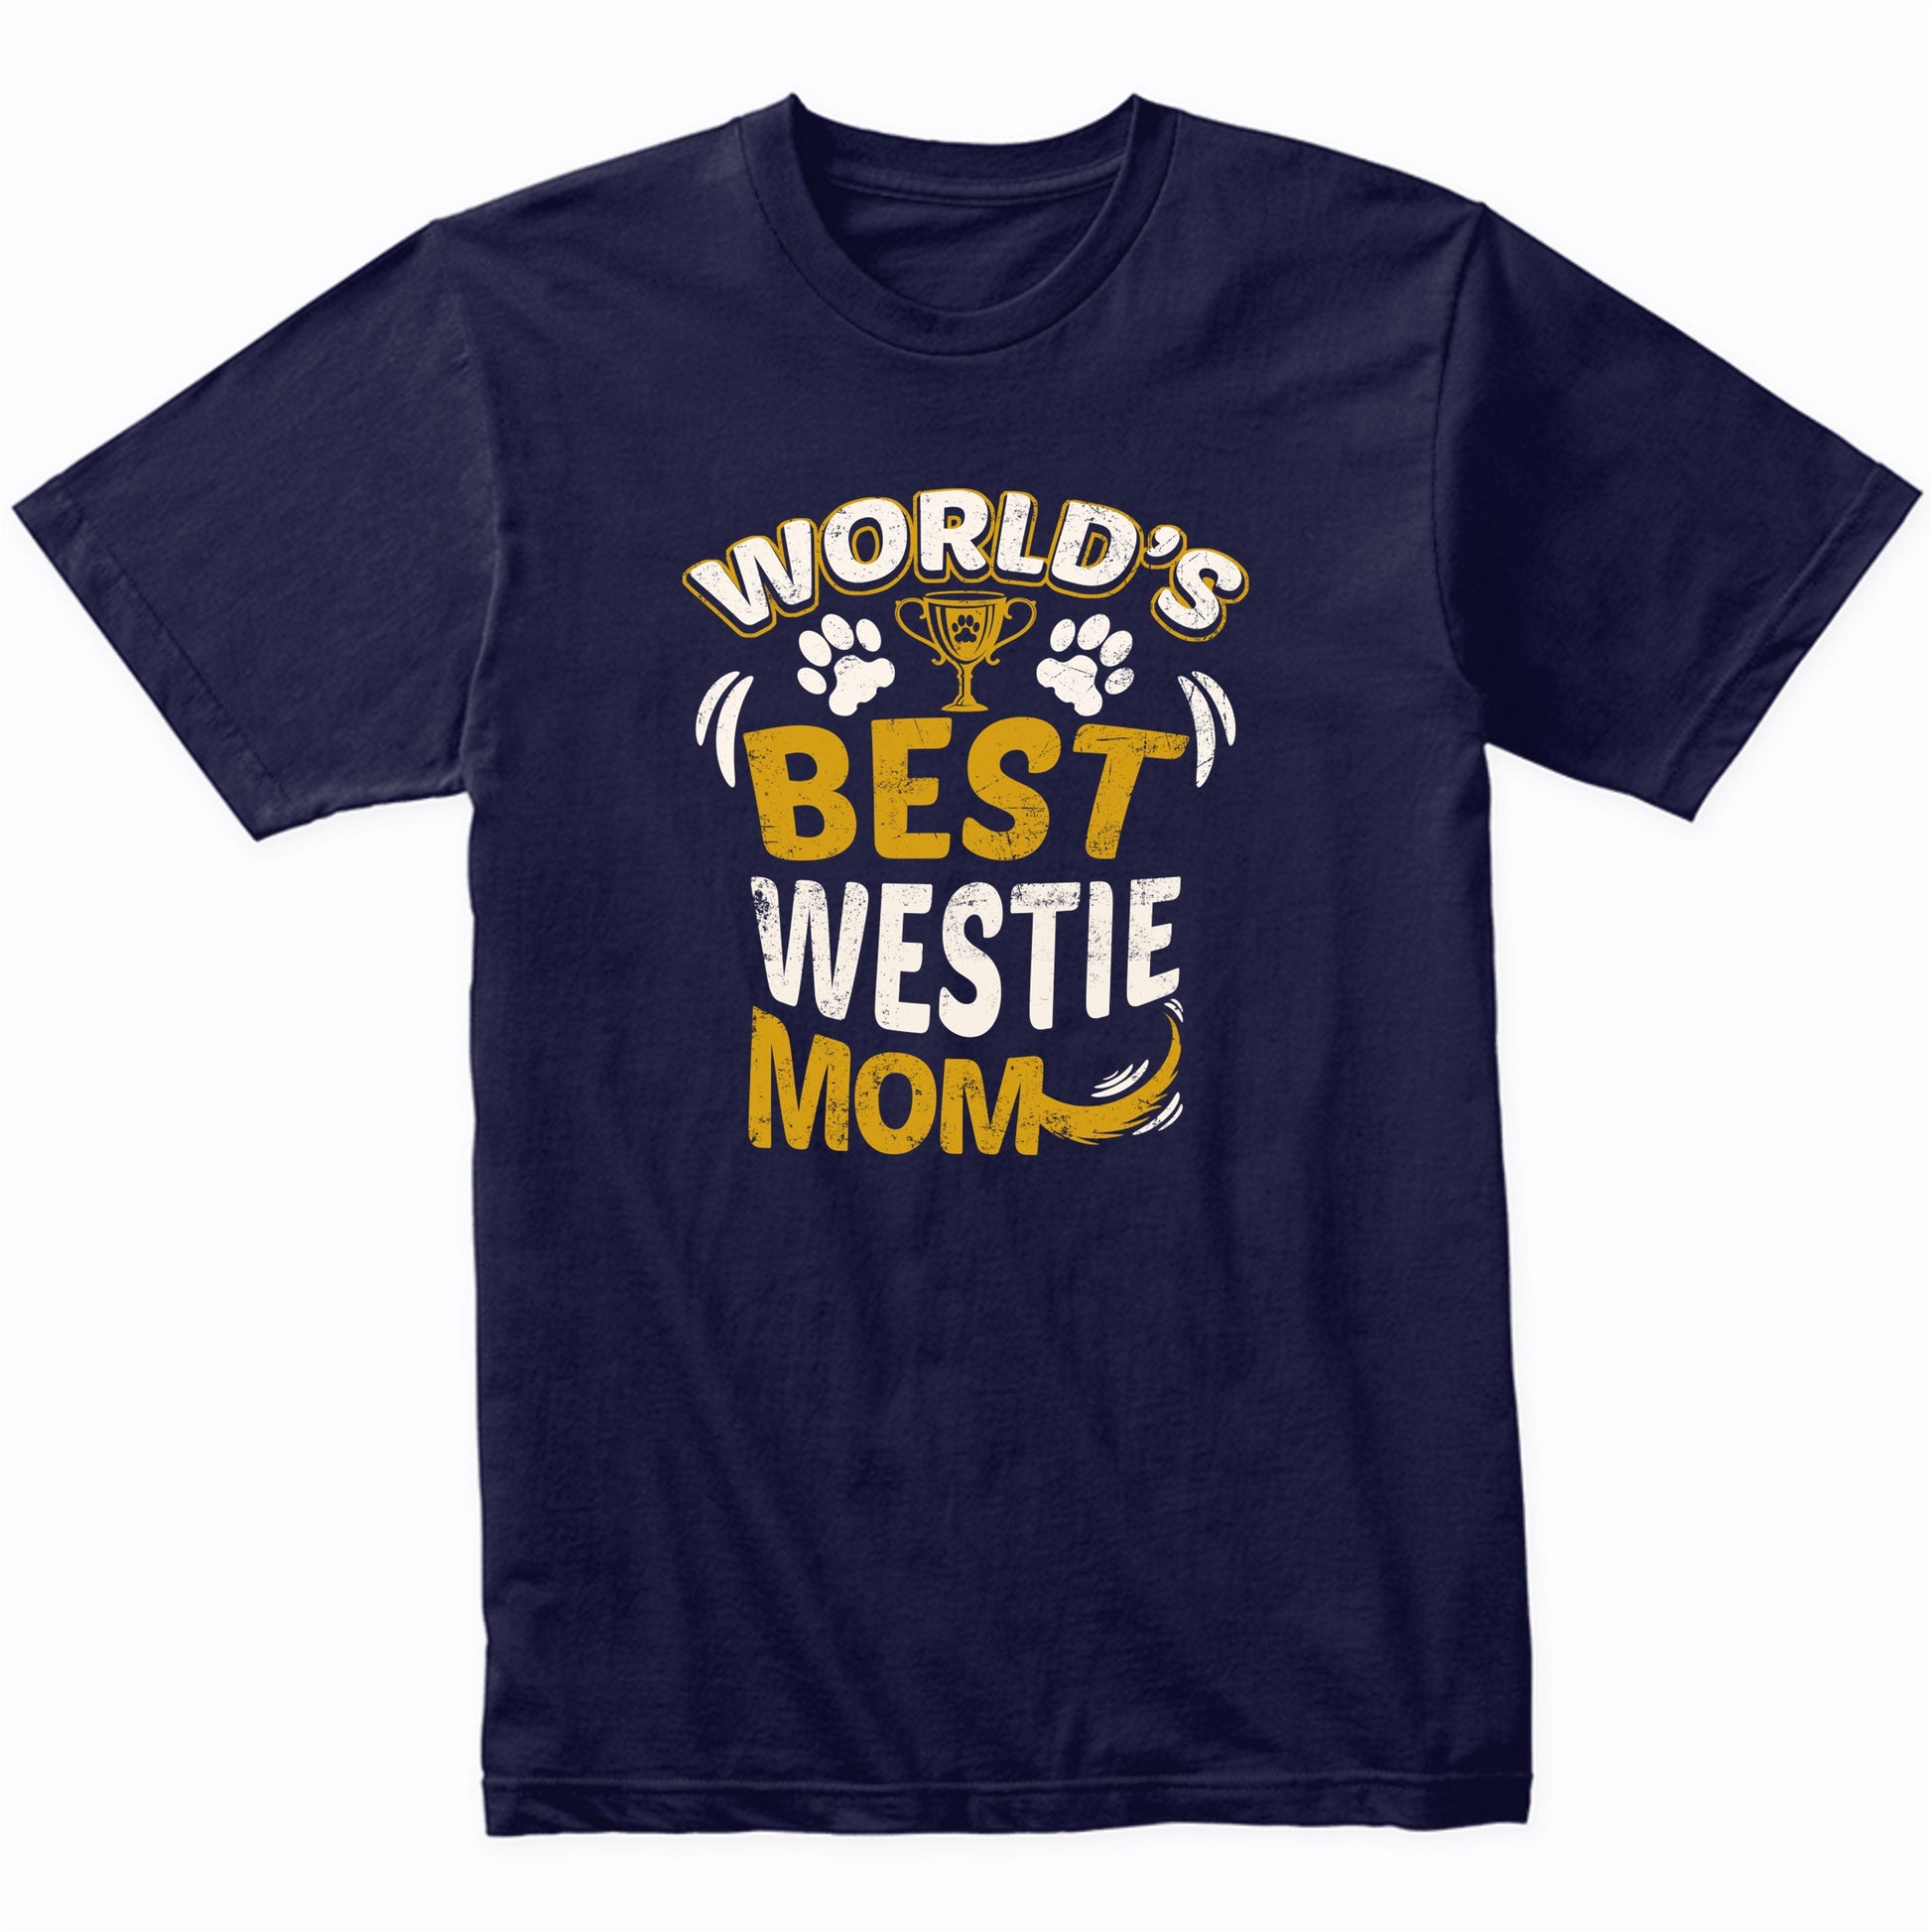 World's Best Westie Mom Graphic T-Shirt